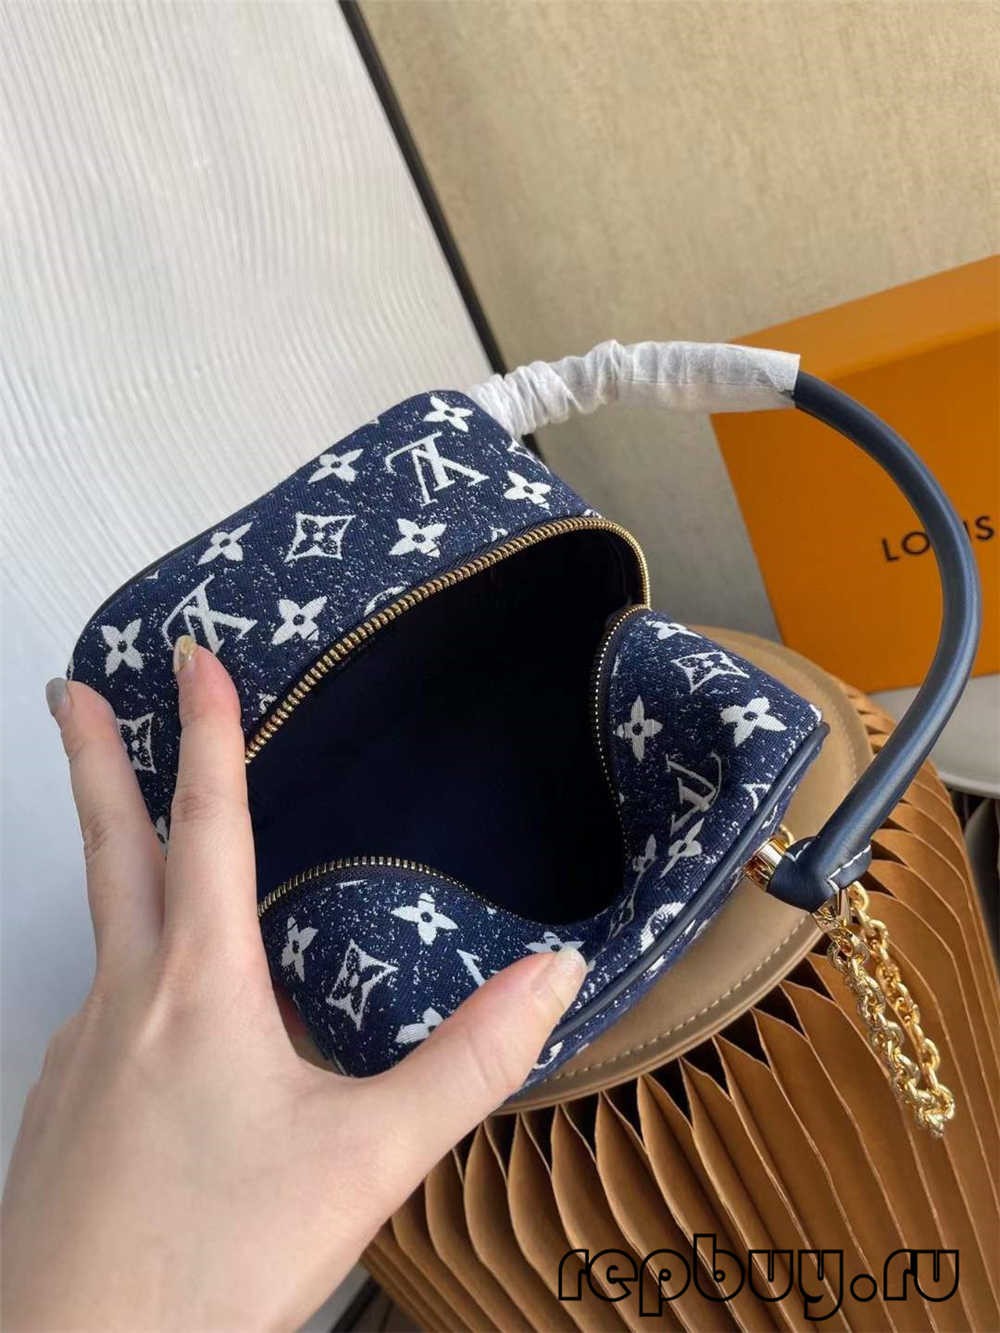 Borsa Louis Vuitton SQUARE borsa M59611 replica di alta qualità (aggiornato 2022)-Best Quality Fake Louis Vuitton Bag Online Store, Replica designer bag ru